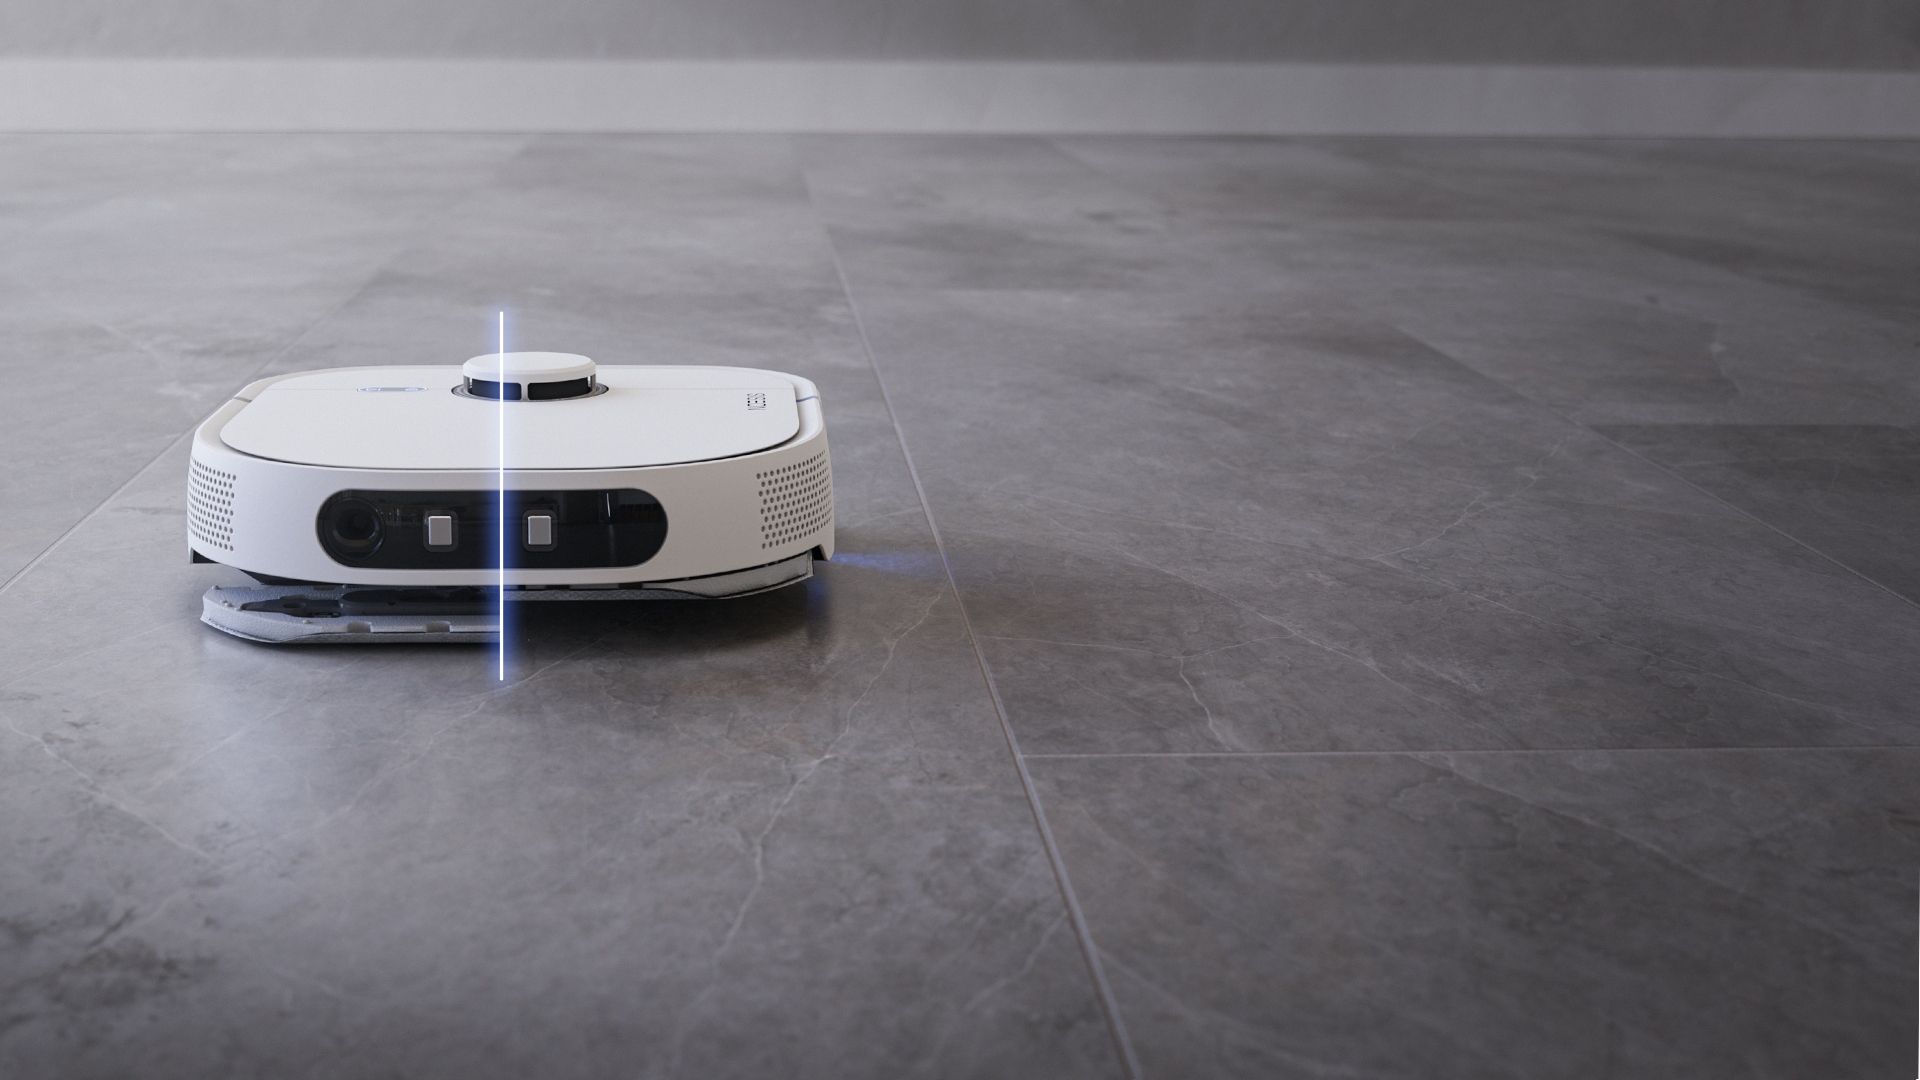 Noesis robot on hard clean floors